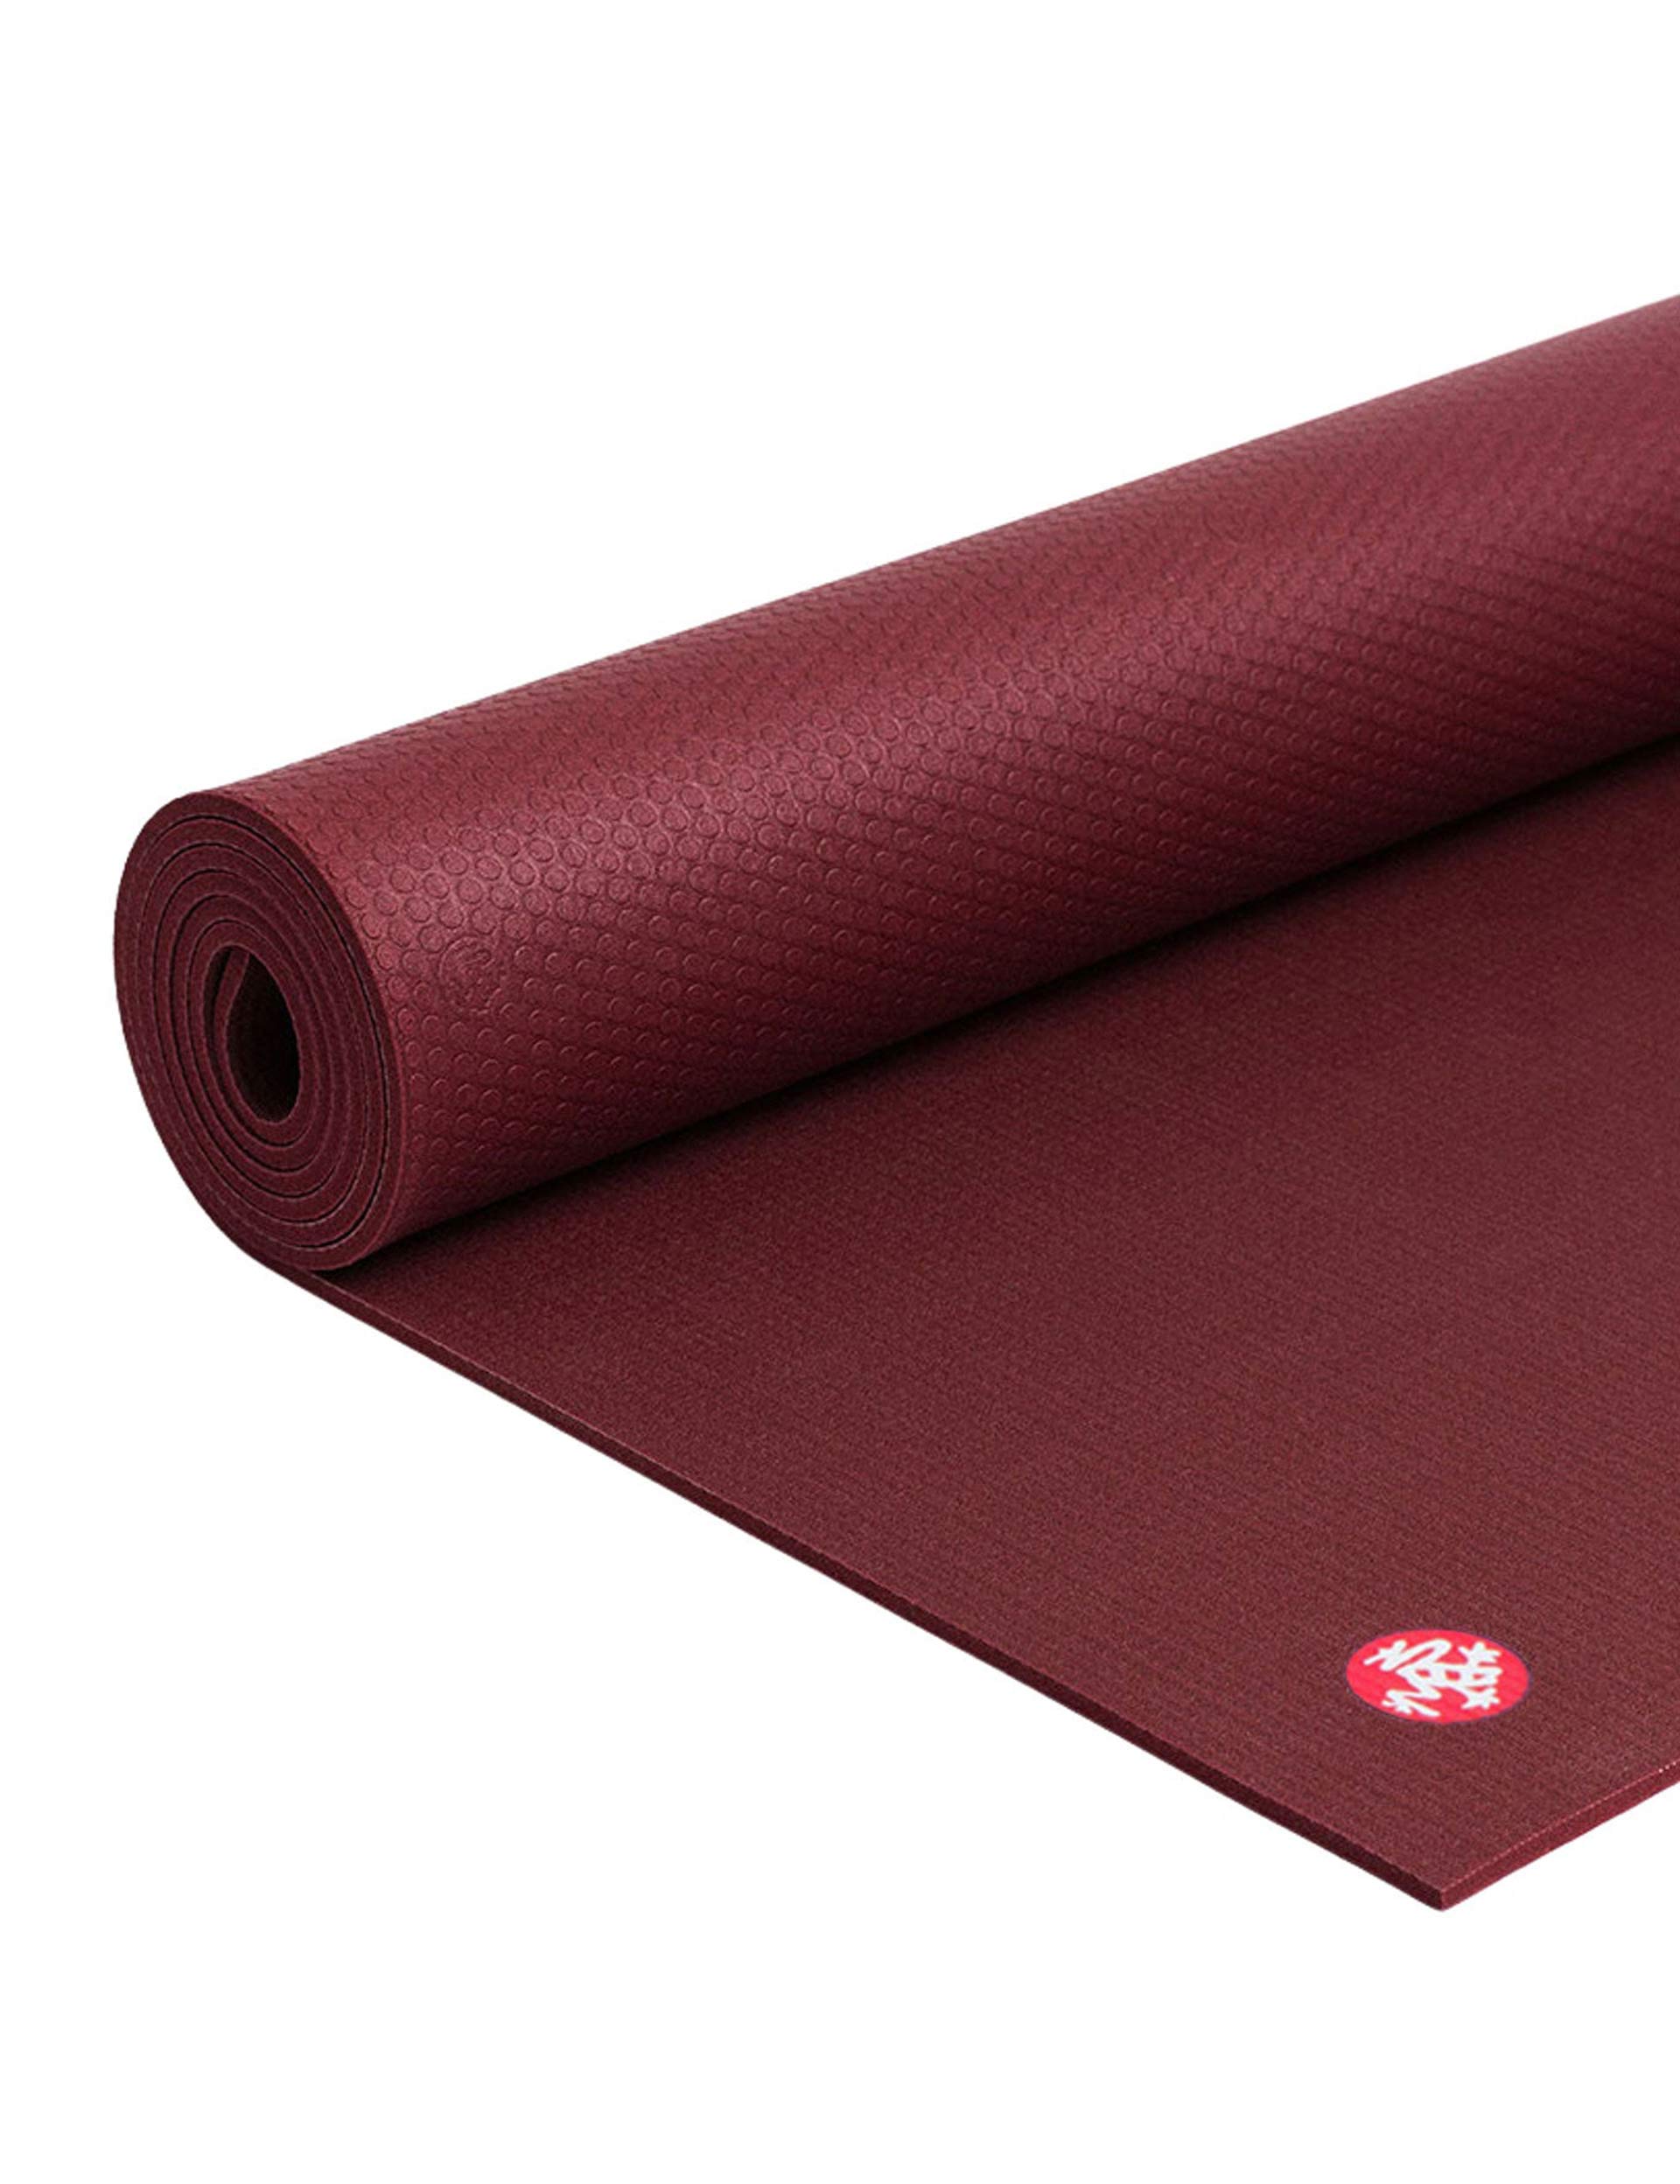 Manduka PRO Yoga & Pilates Mat, Mats -  Canada